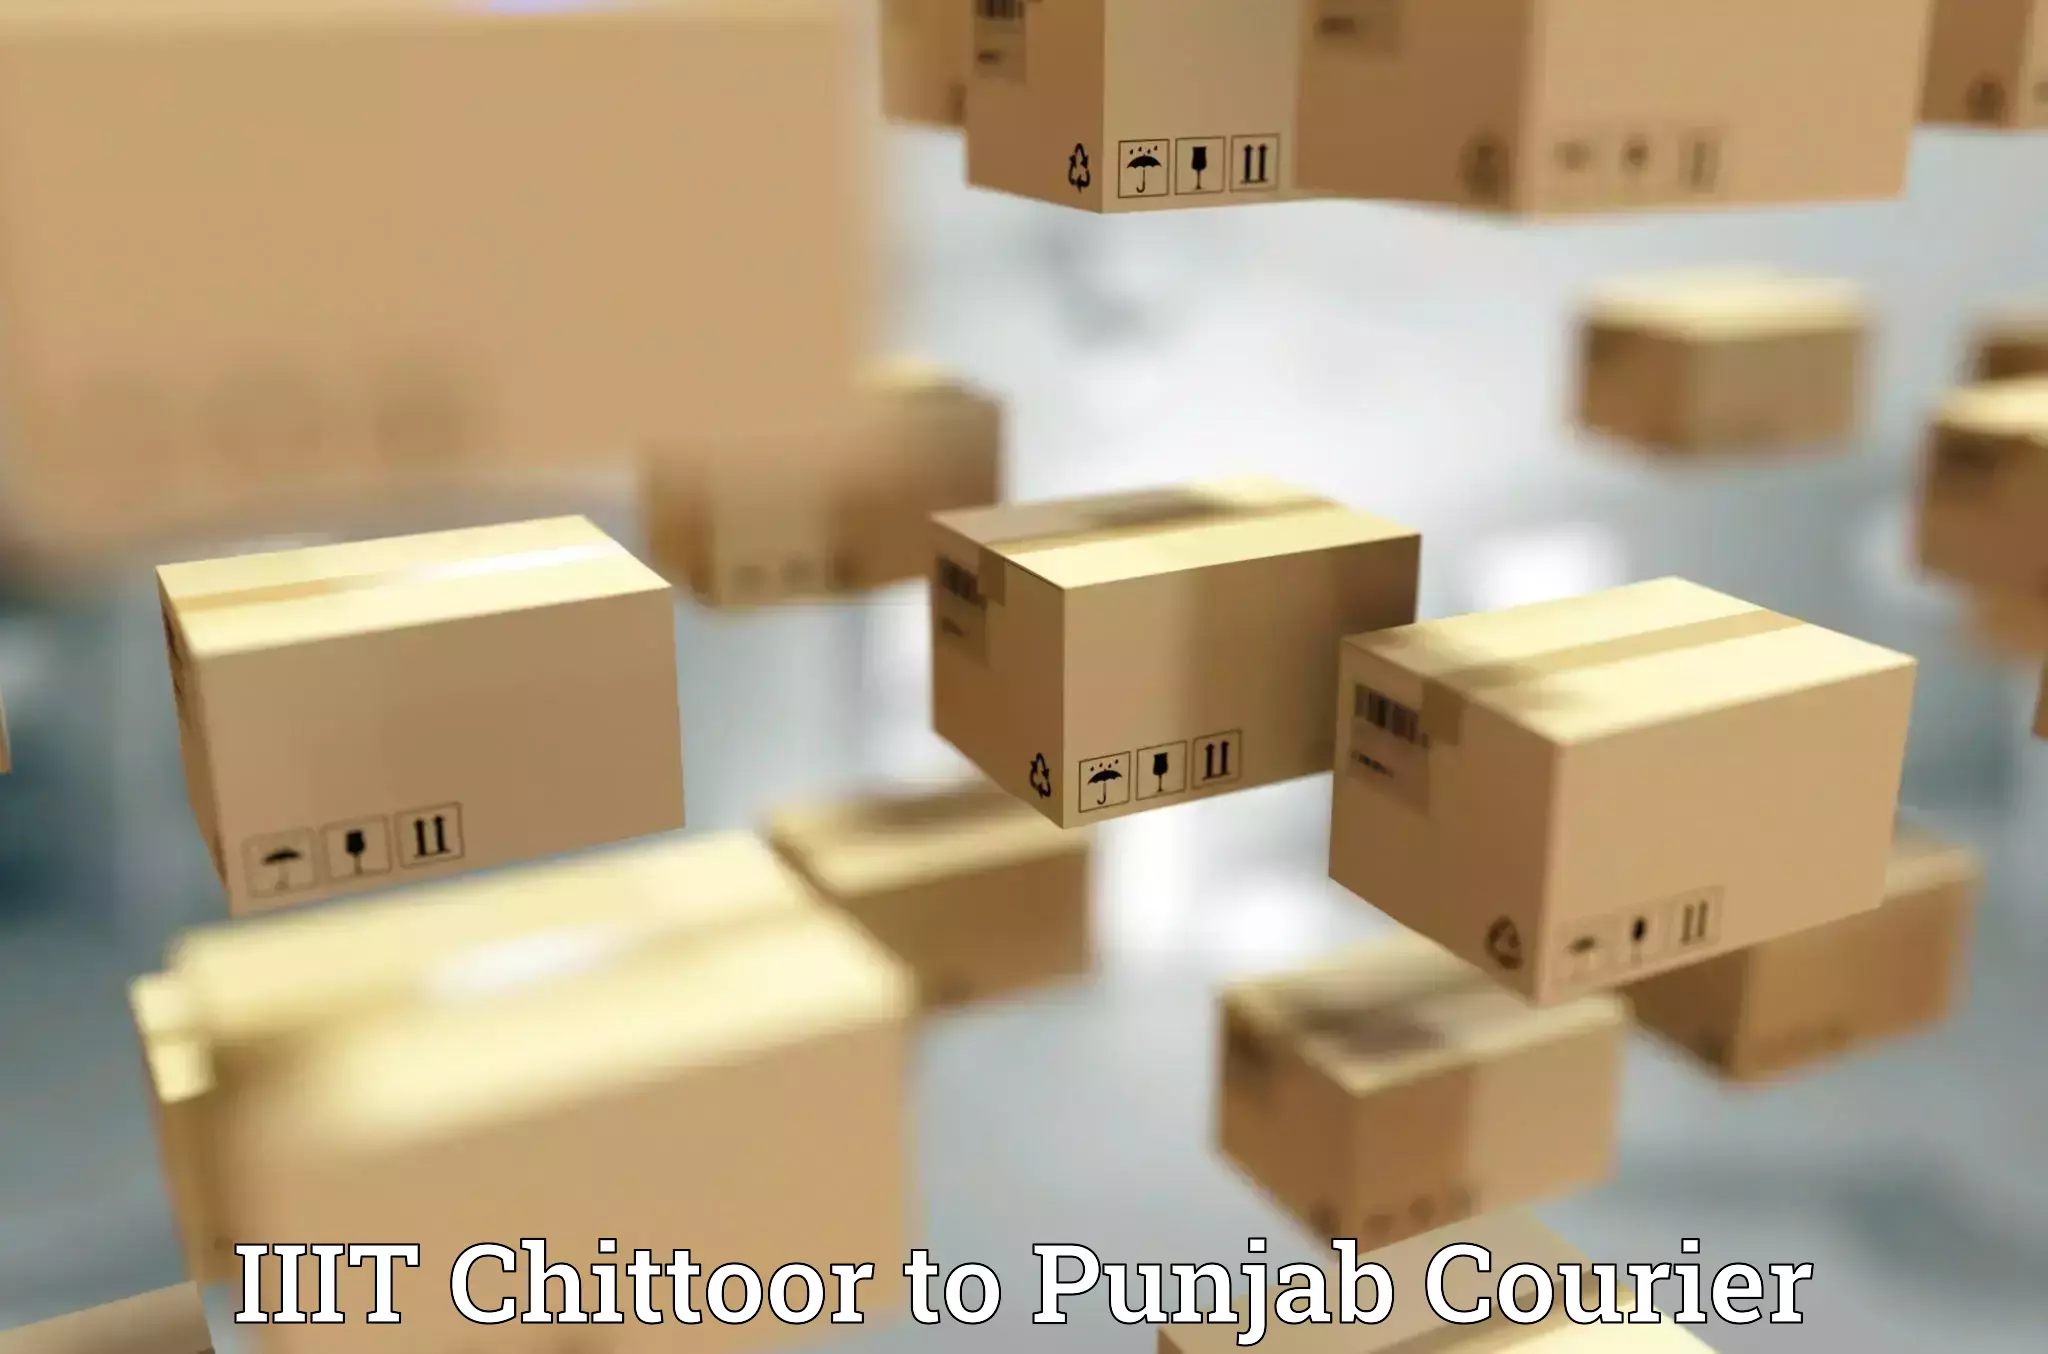 Corporate courier solutions IIIT Chittoor to IIT Ropar